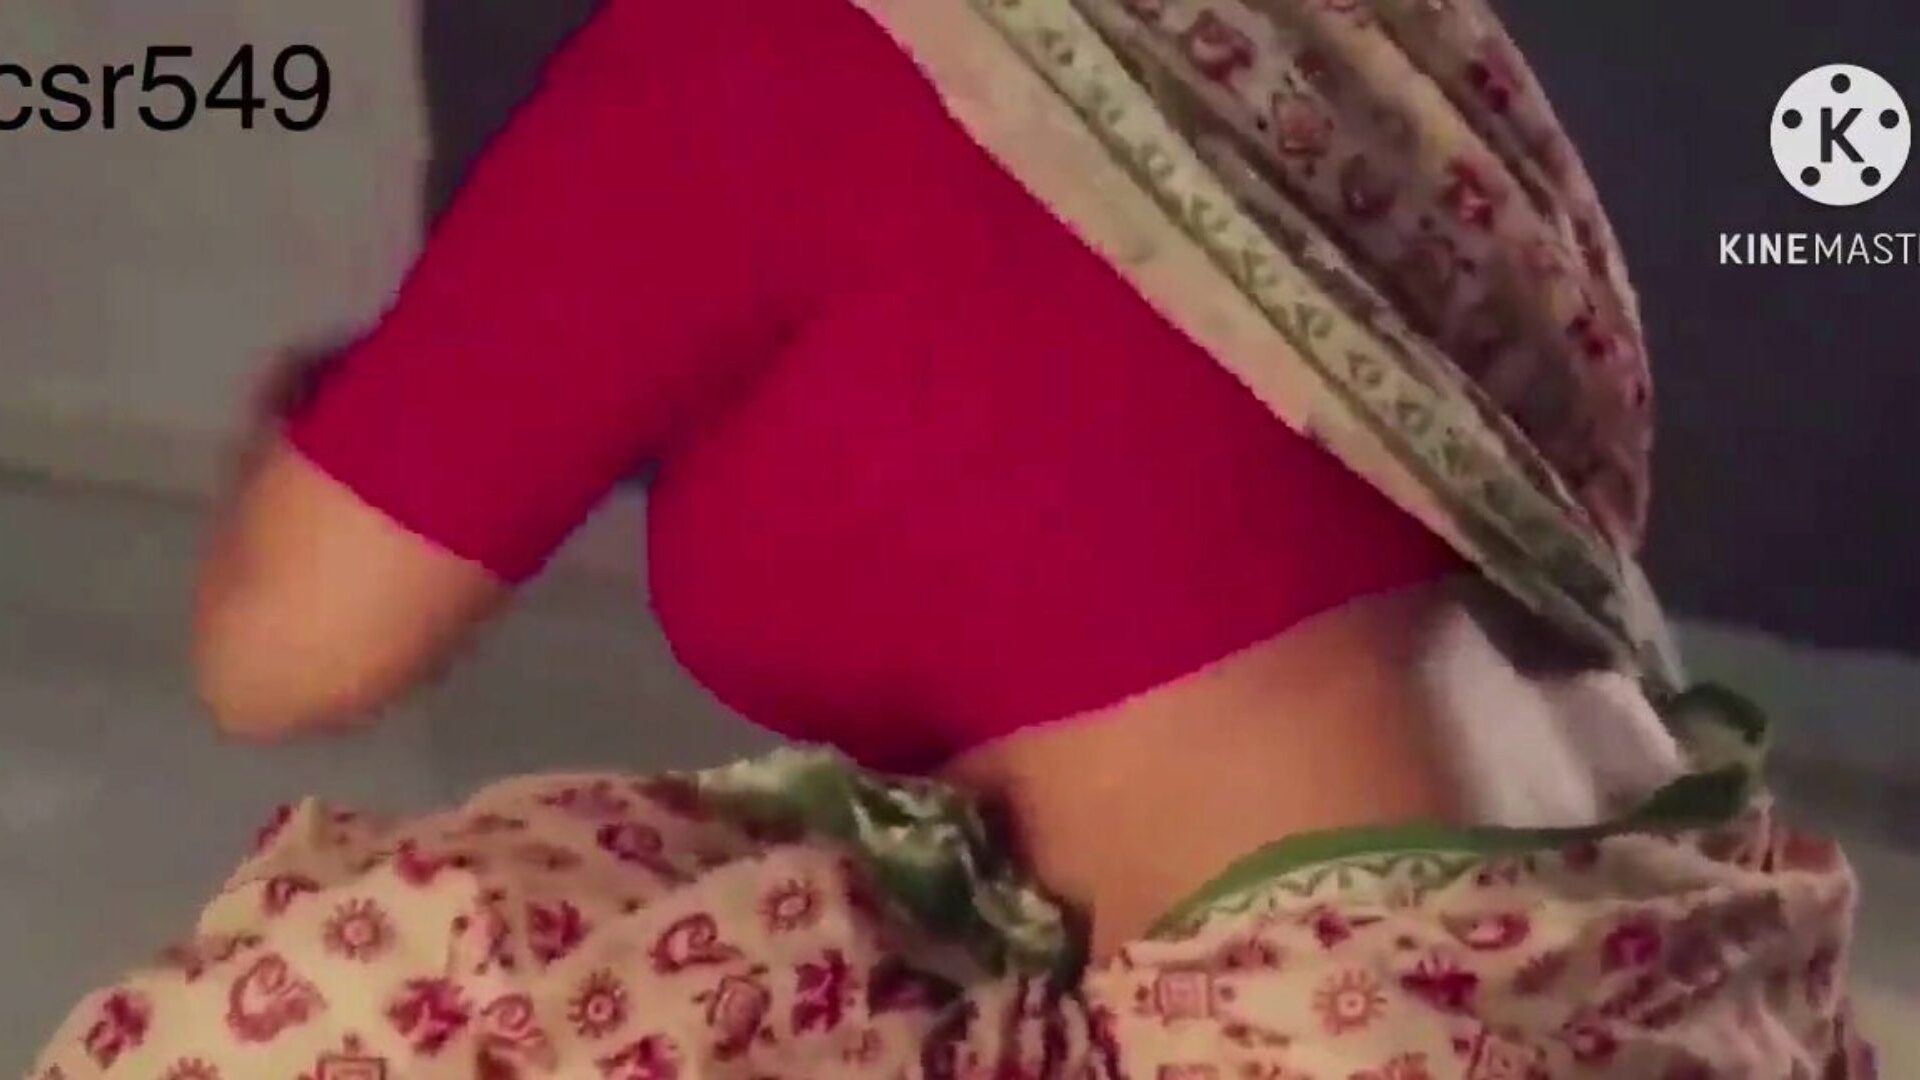 Desi sexy n suculentas mulheres saree vermelhas sendo fodidas por ... assistir desi sexy e suculenta mulher em um saree vermelho sendo fodidas por servo filme em xhamster - o banco de dados final de vídeos de tubo pornô indiano indiano grátis para todos